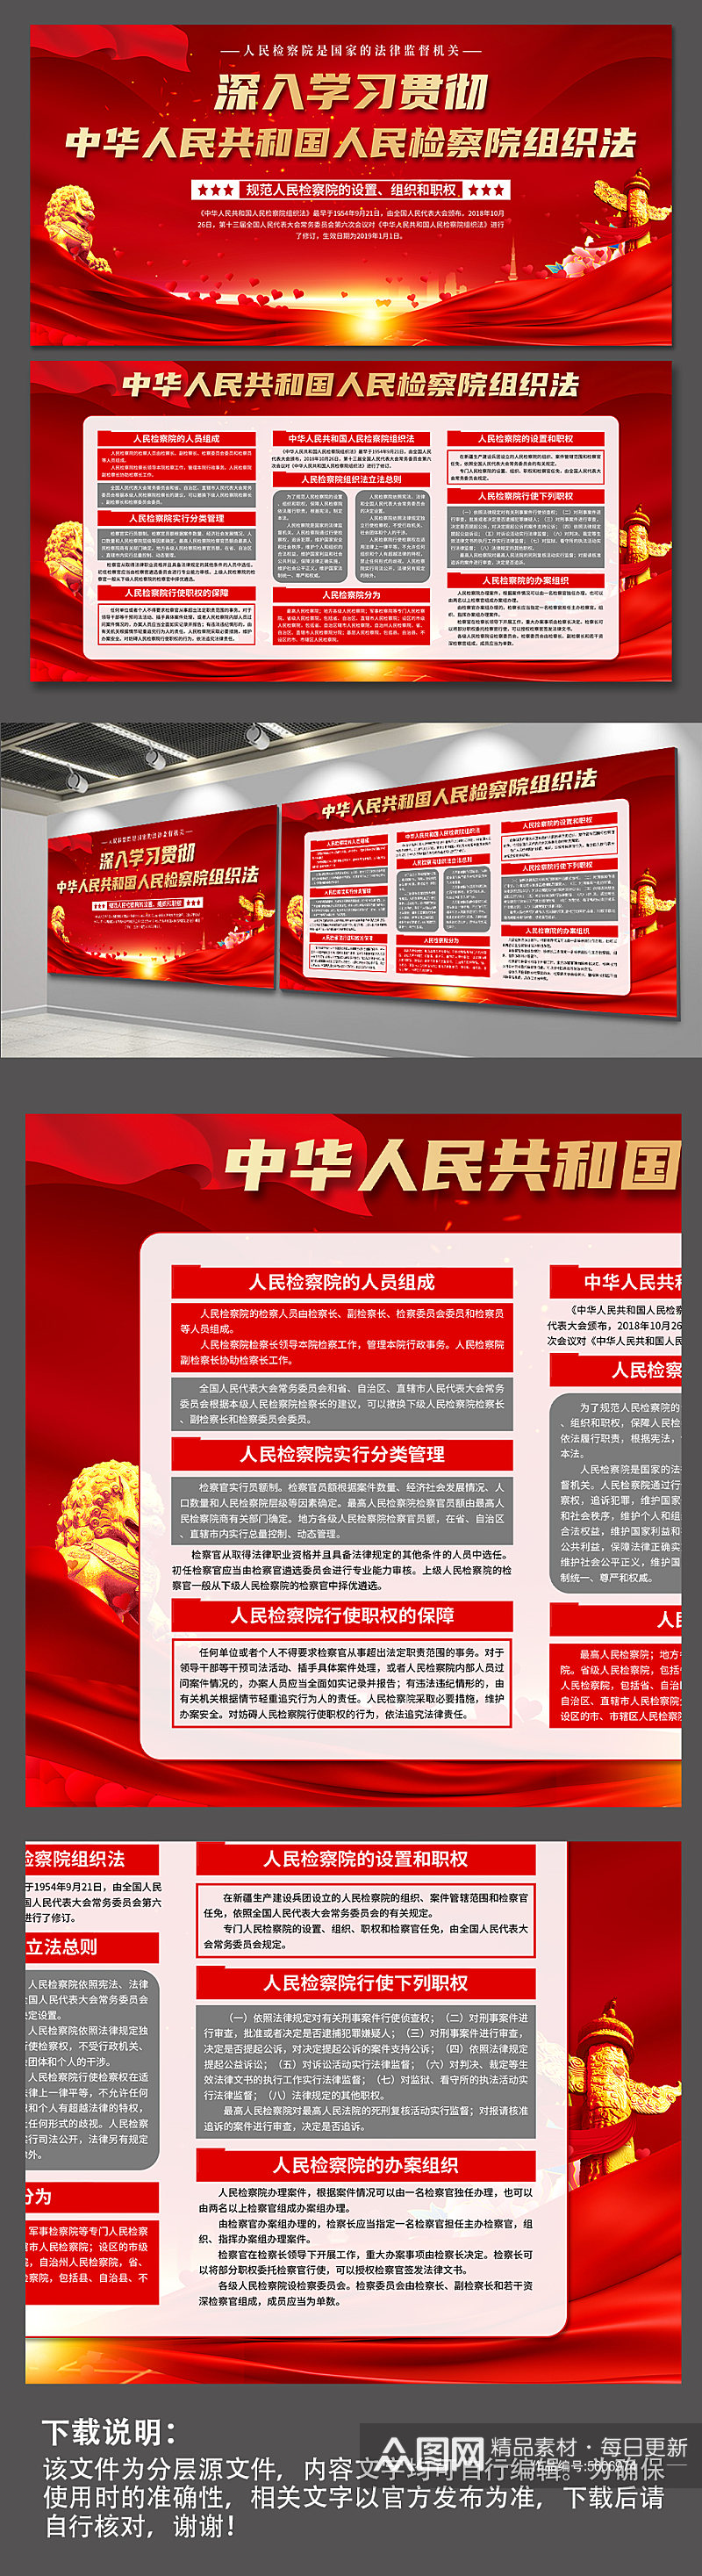 红色中华人民共和国人民检察院组织法展板素材